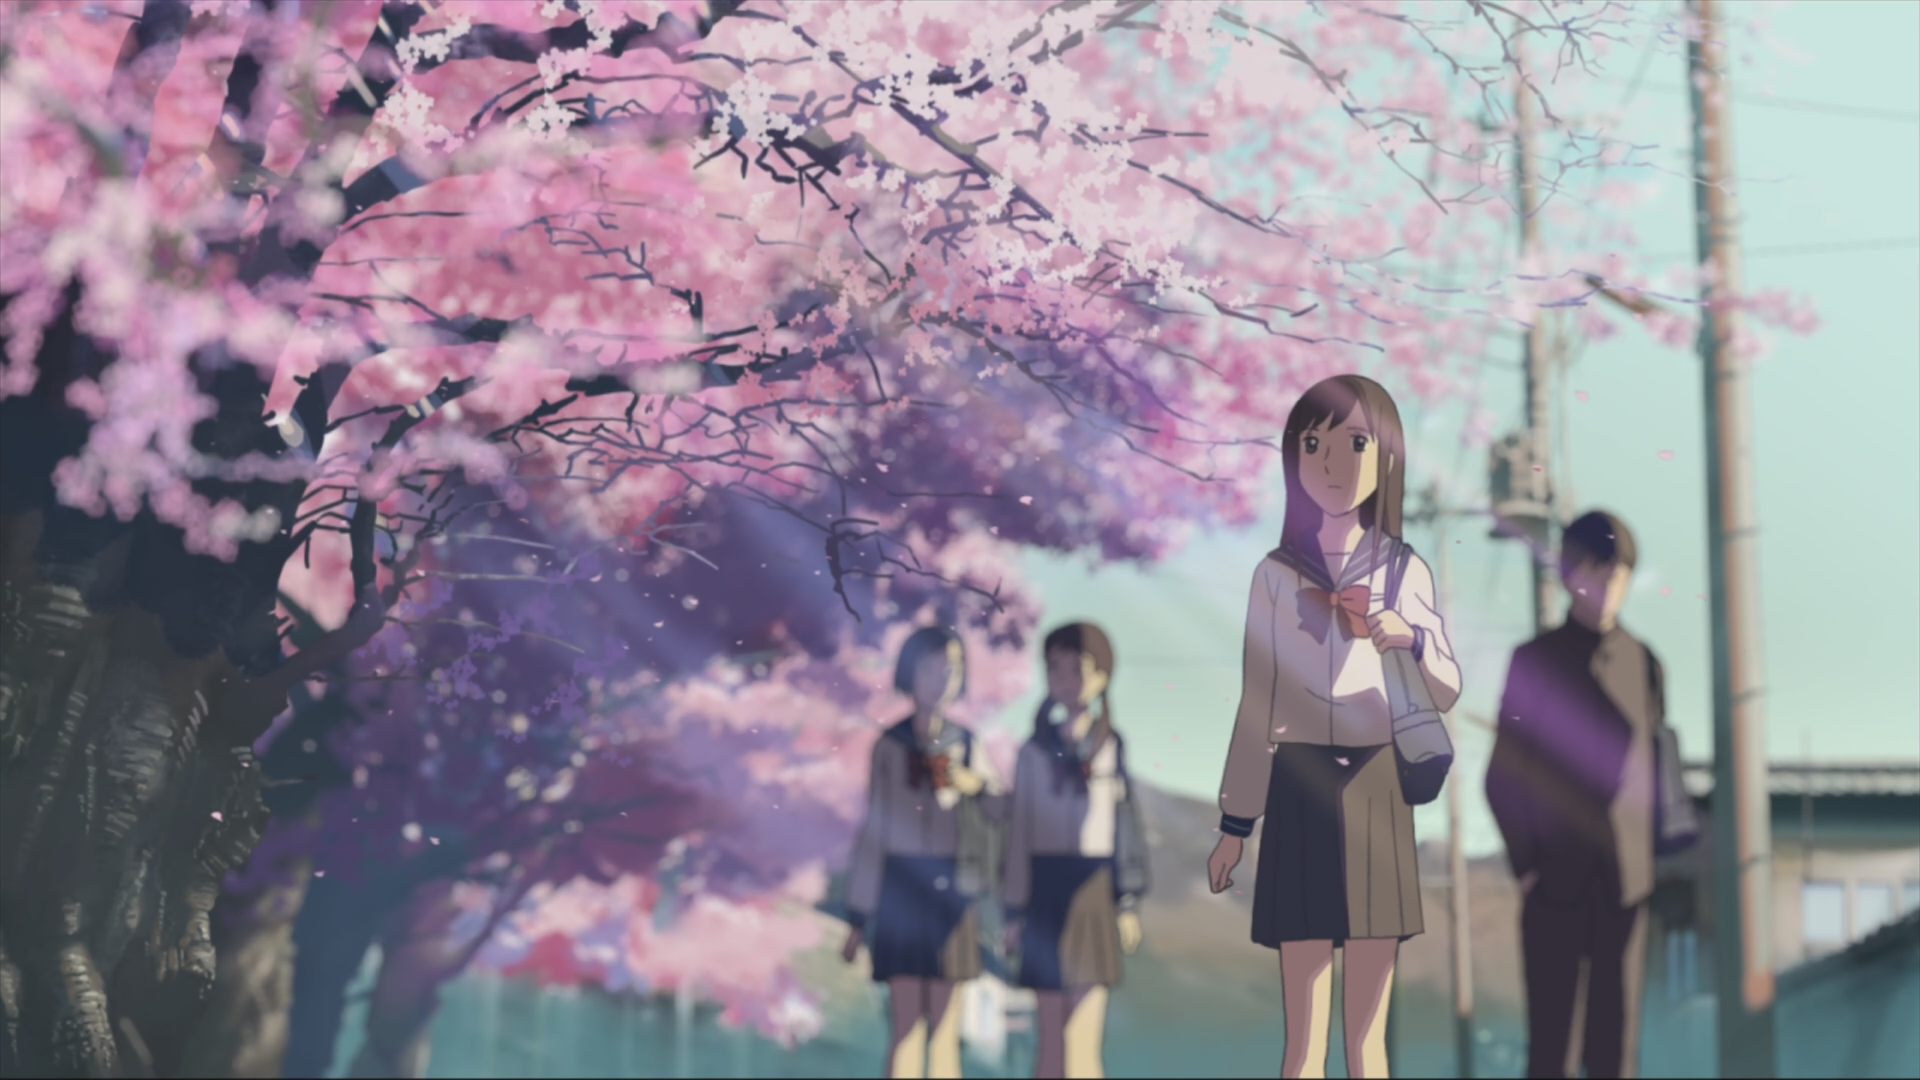 вишни в цвету, школа, Макото Синкай, живописный, 5 сантиметров в секунду, произведение искусства, аниме - обои на рабочий стол